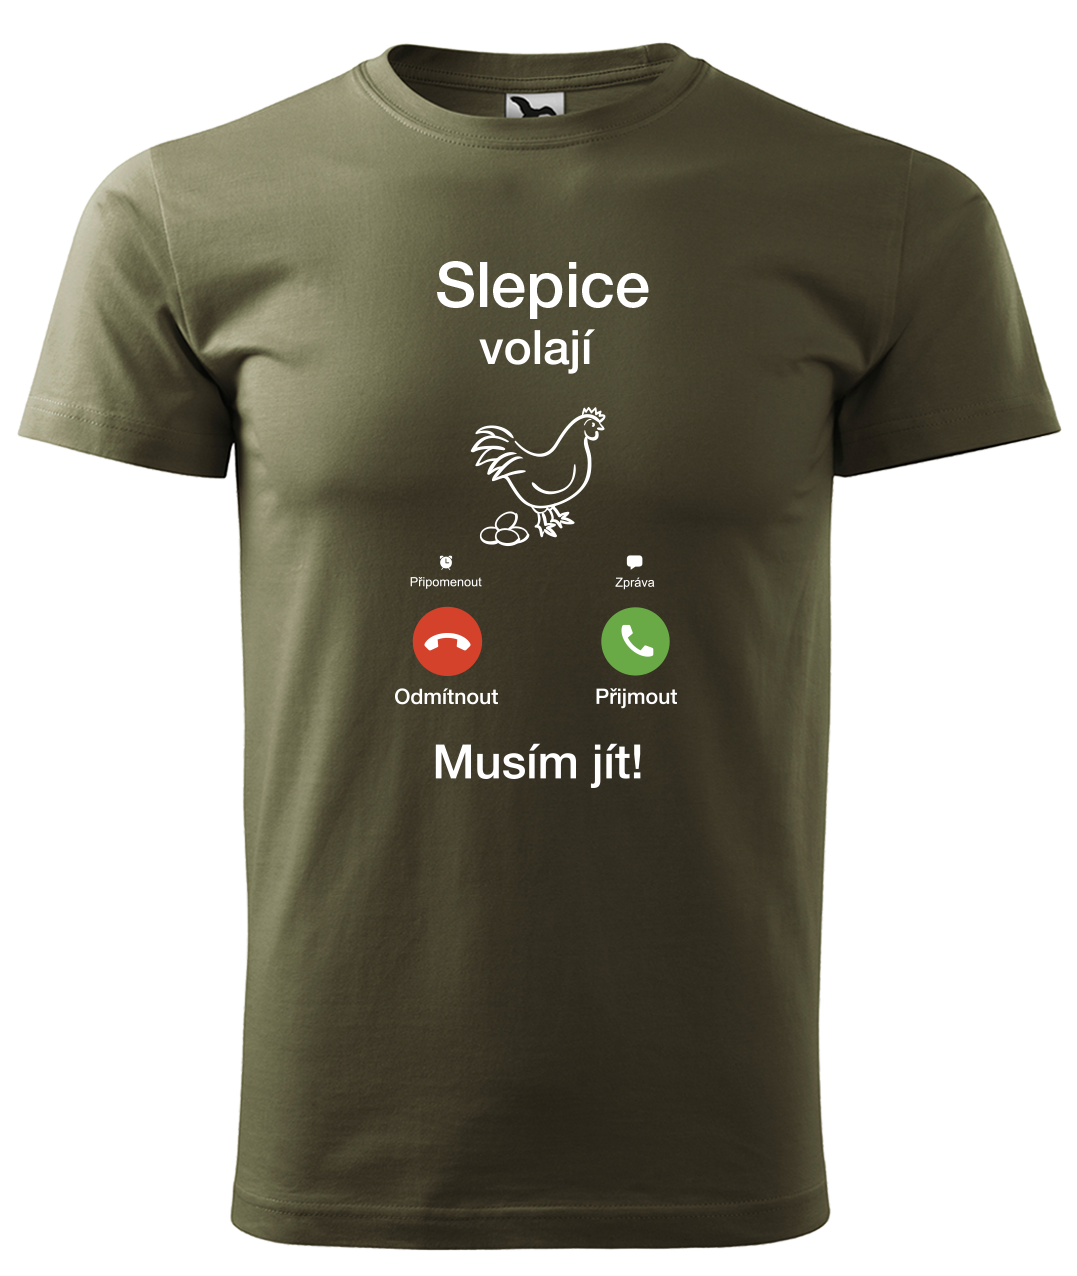 Dětské tričko se slepicí - Slepice volají Velikost: 4 roky / 110 cm, Barva: Military (69)